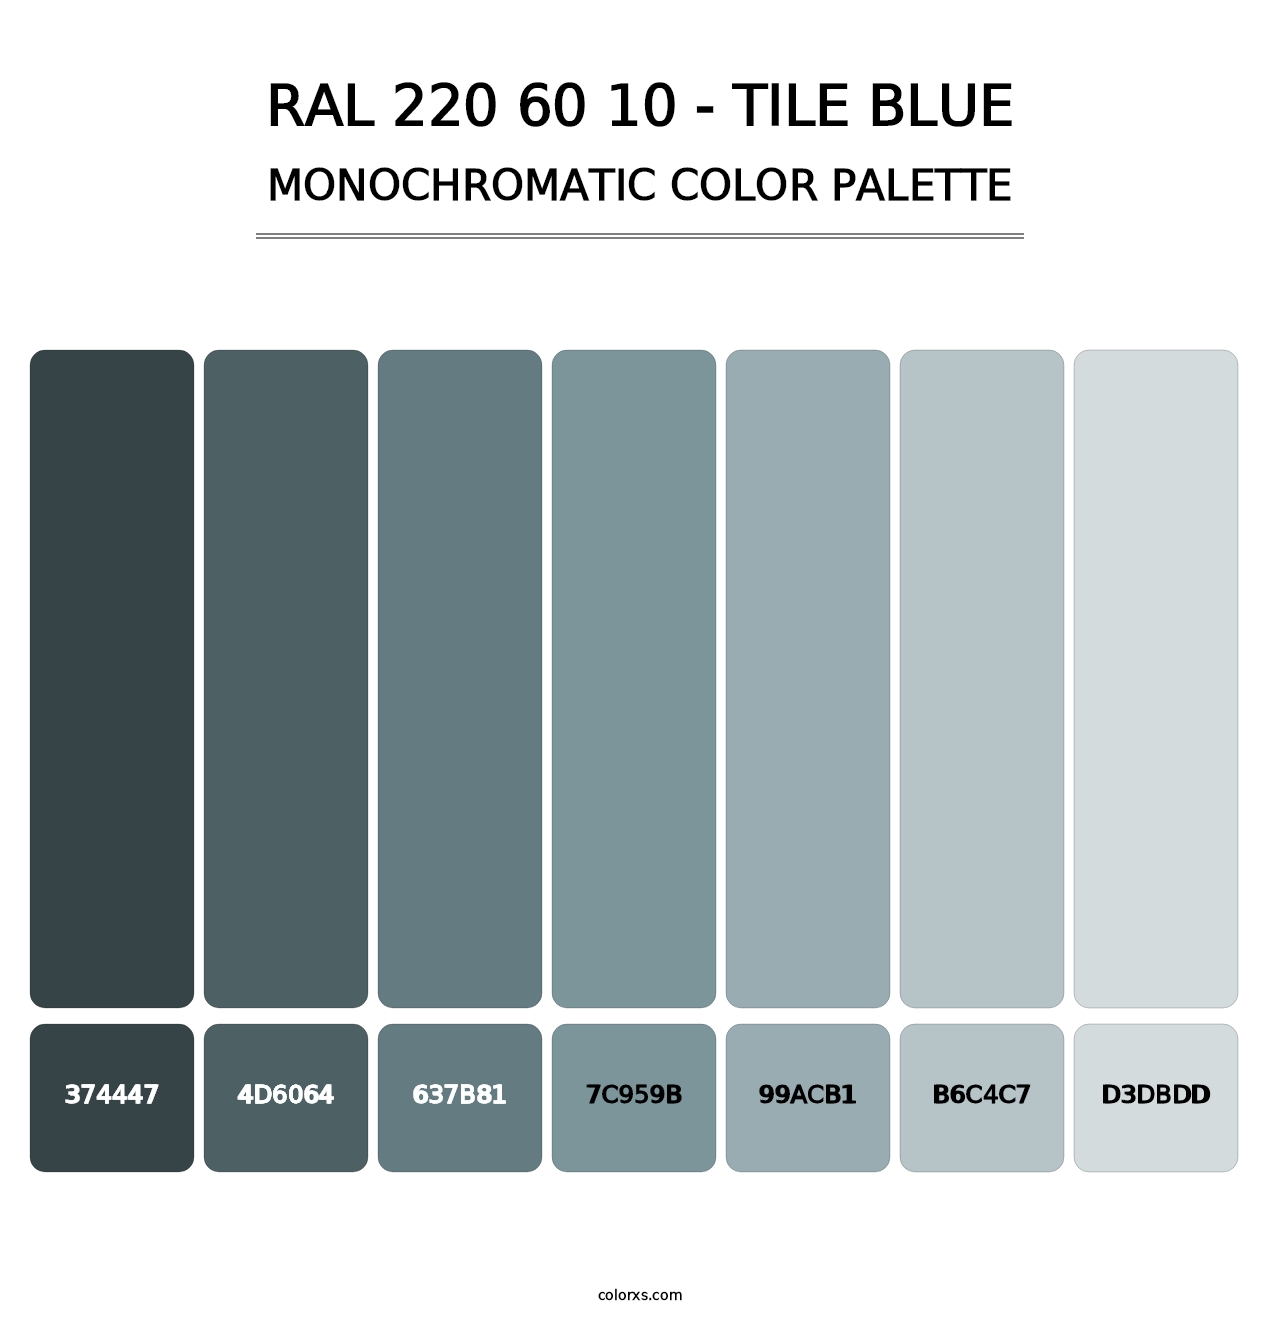 RAL 220 60 10 - Tile Blue - Monochromatic Color Palette